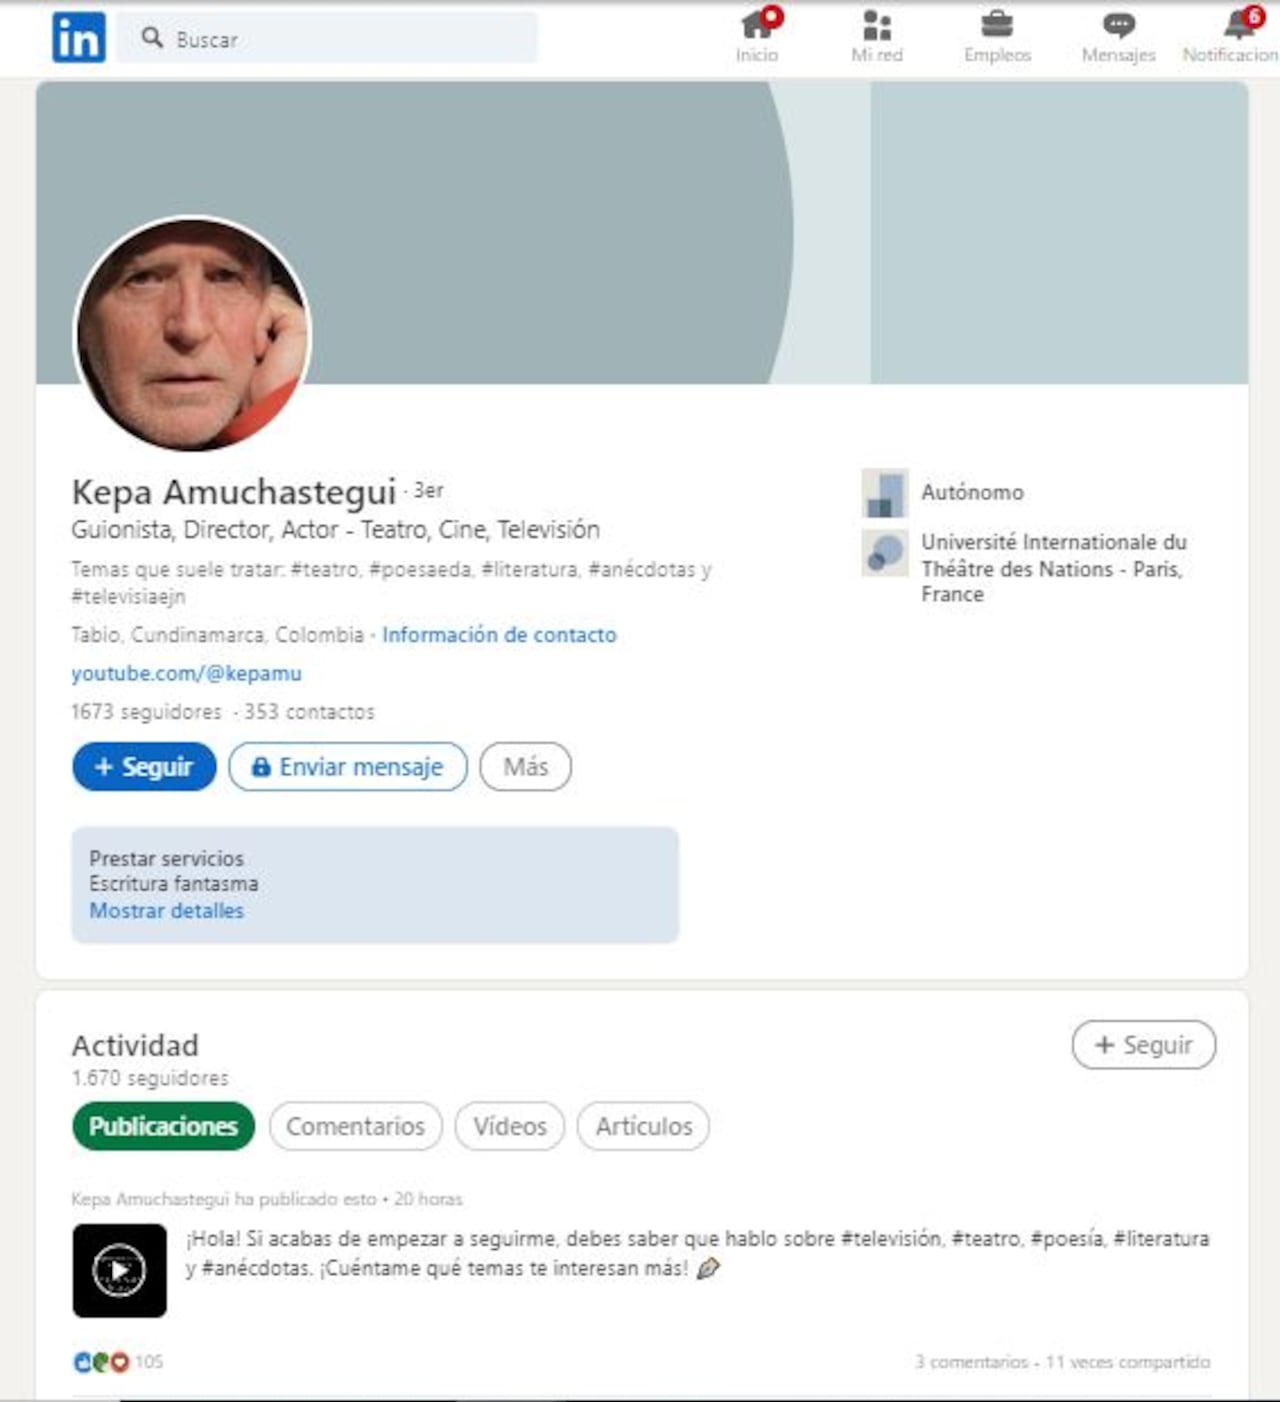 Kepa Amuchastegui actualizó su perfil de LinkedIn